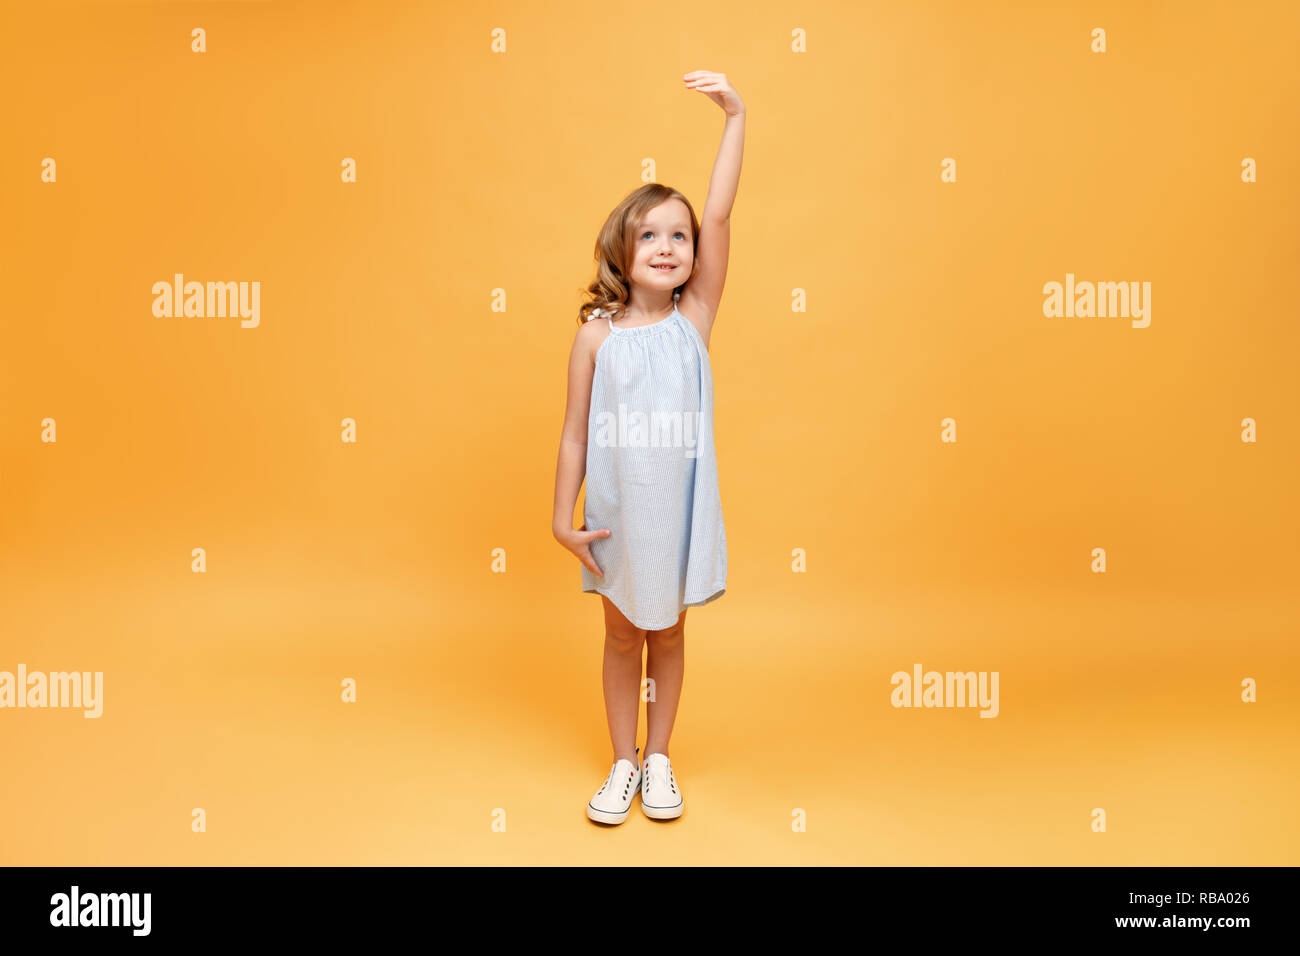 Un bambino piccolo che misura la sua altezza su uno sfondo giallo. Concetto di sviluppo, obiettivo, il successo Foto Stock